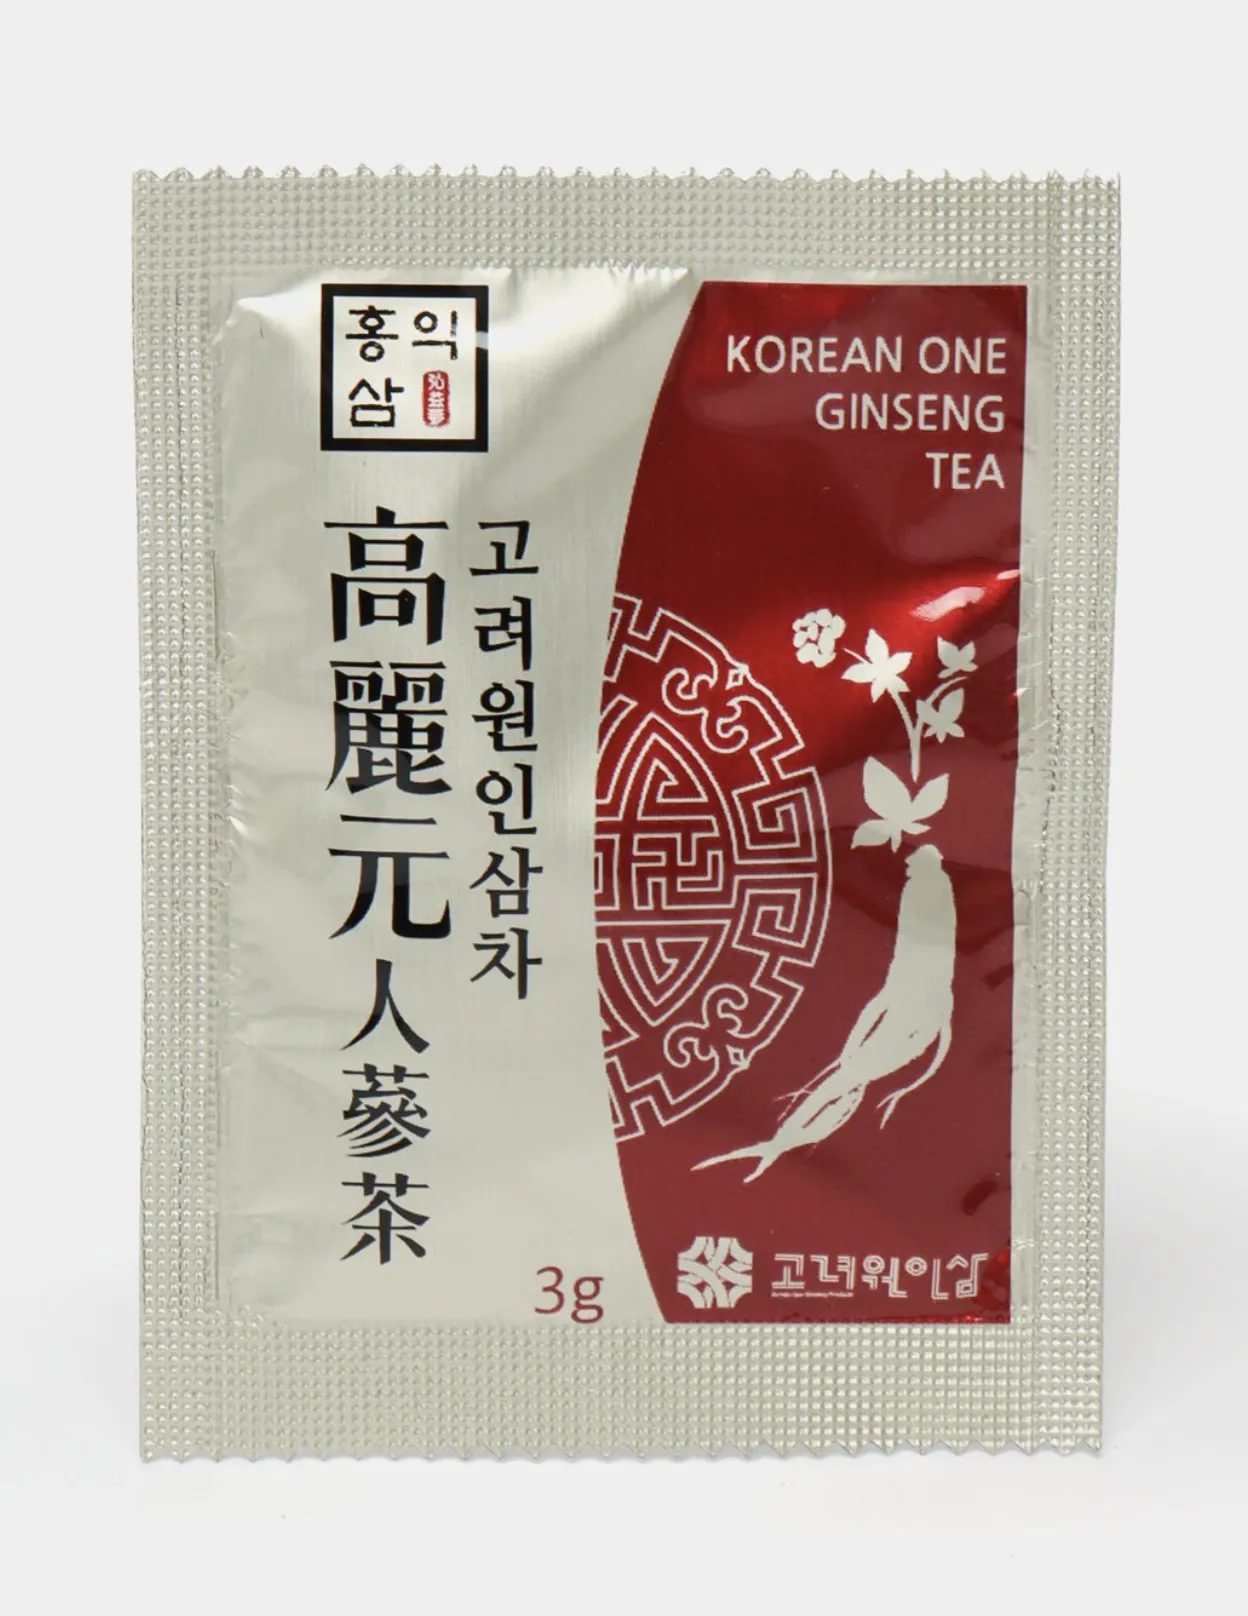 Ginseng choyi#2